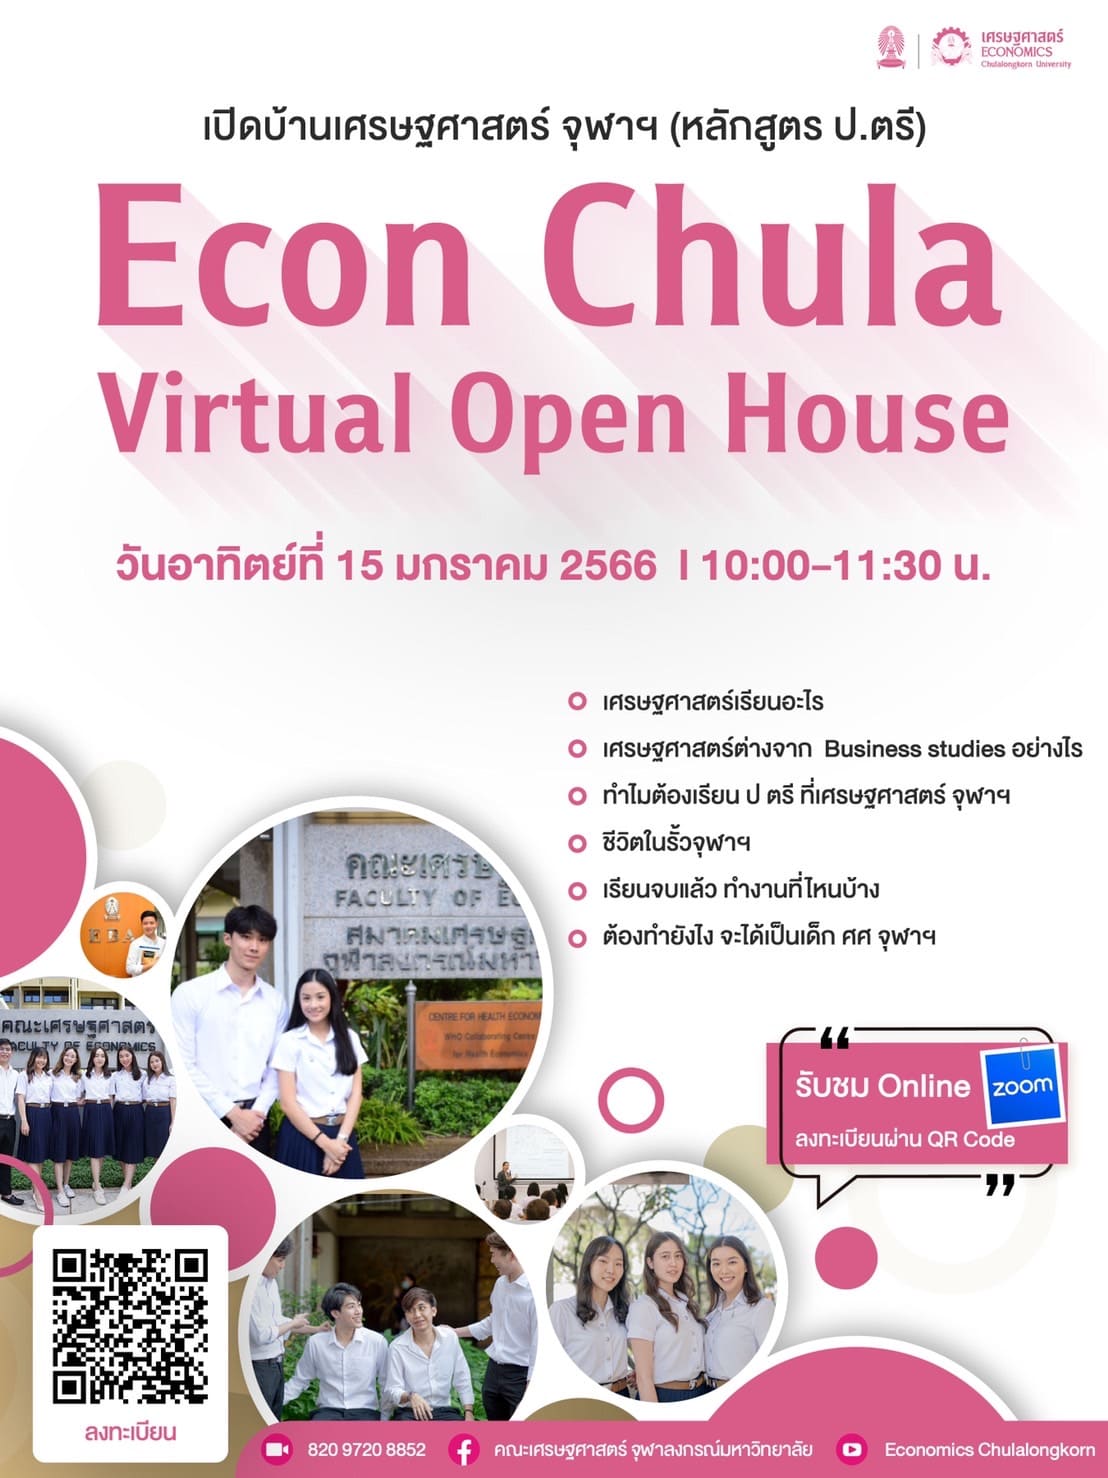 Econ Chula Virtual Open House  เปิดบ้านเศรษฐศาสตร์ จุฬาฯ (หลักสูตร ปริญญาตรี)